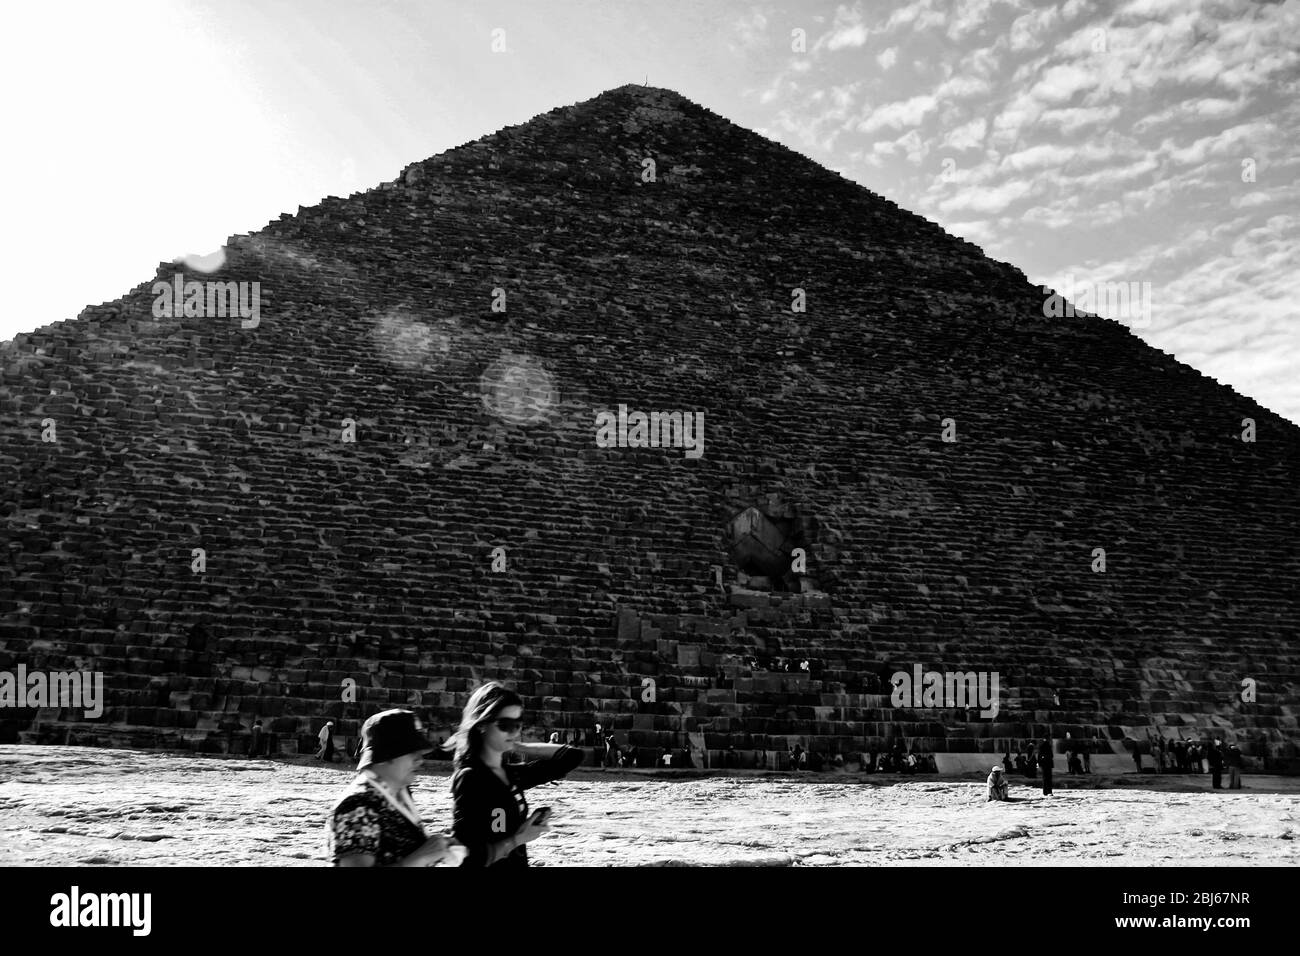 Giza, Egipt. Déc 09, 2008 Grande Pyramide de Giza. Aussi connue sous le nom de Pyramide Khufu ou Pyramide de Cheops. Deux touristes en passage. PH noir et blanc Banque D'Images